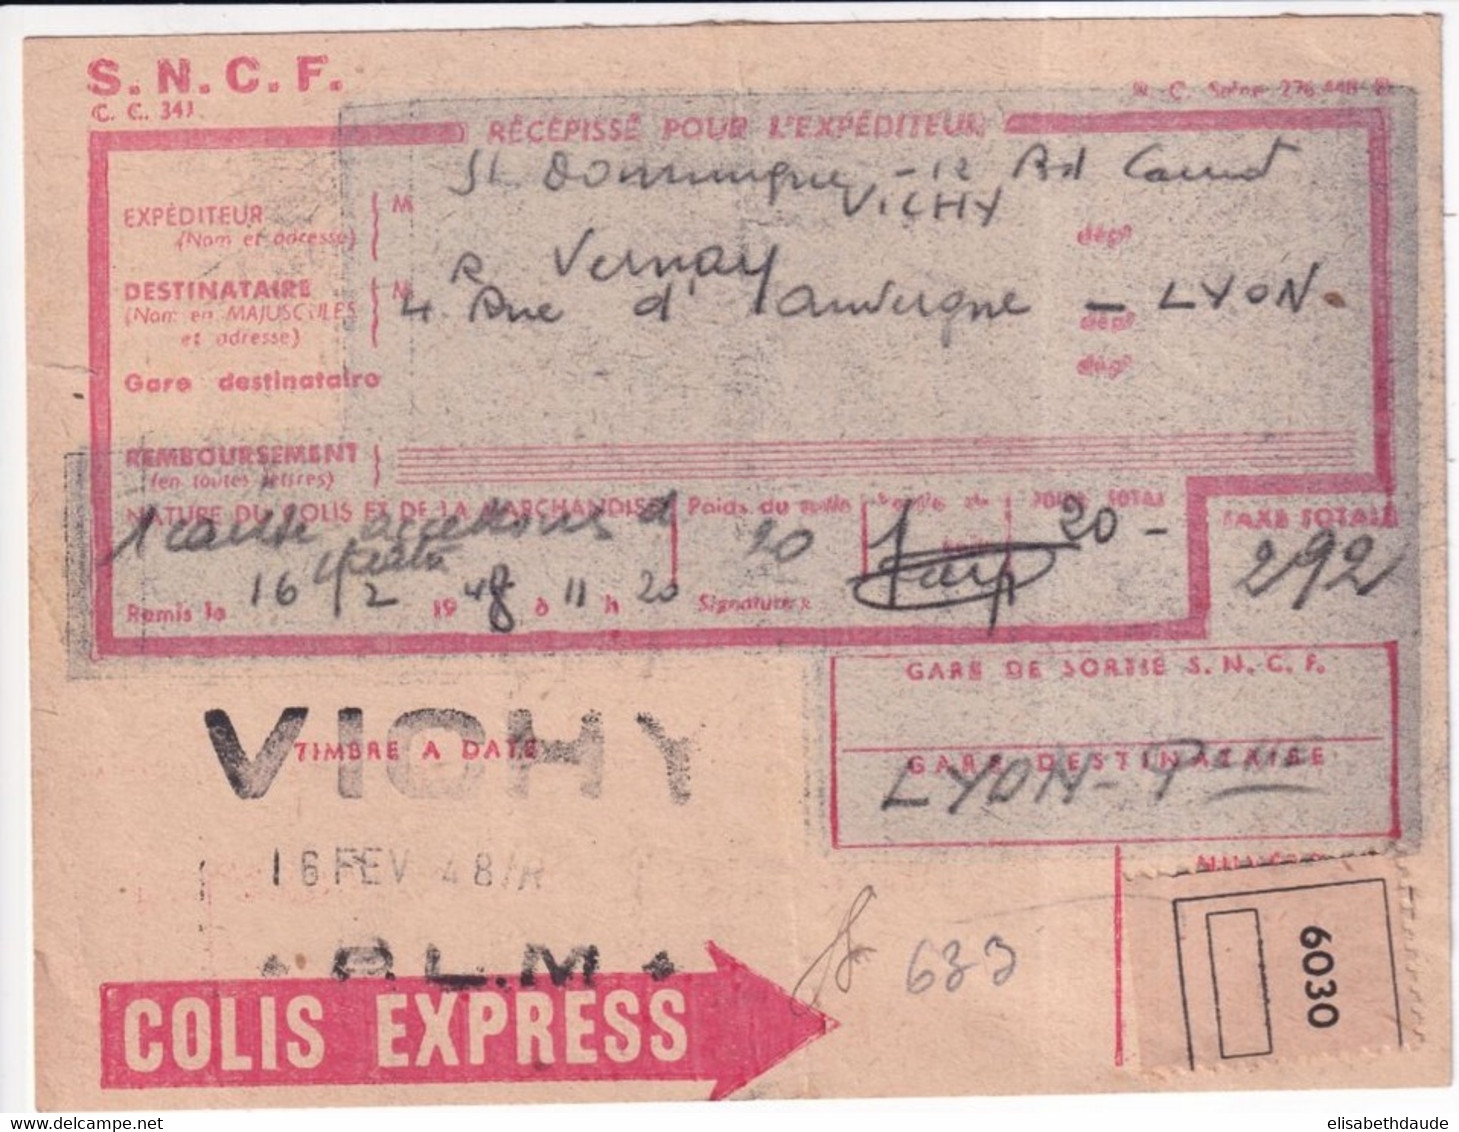 COLIS POSTAUX - 1948 - RECEPISSE COLIS EXPRESS ! De VICHY (ALLIER) => LYON - Covers & Documents